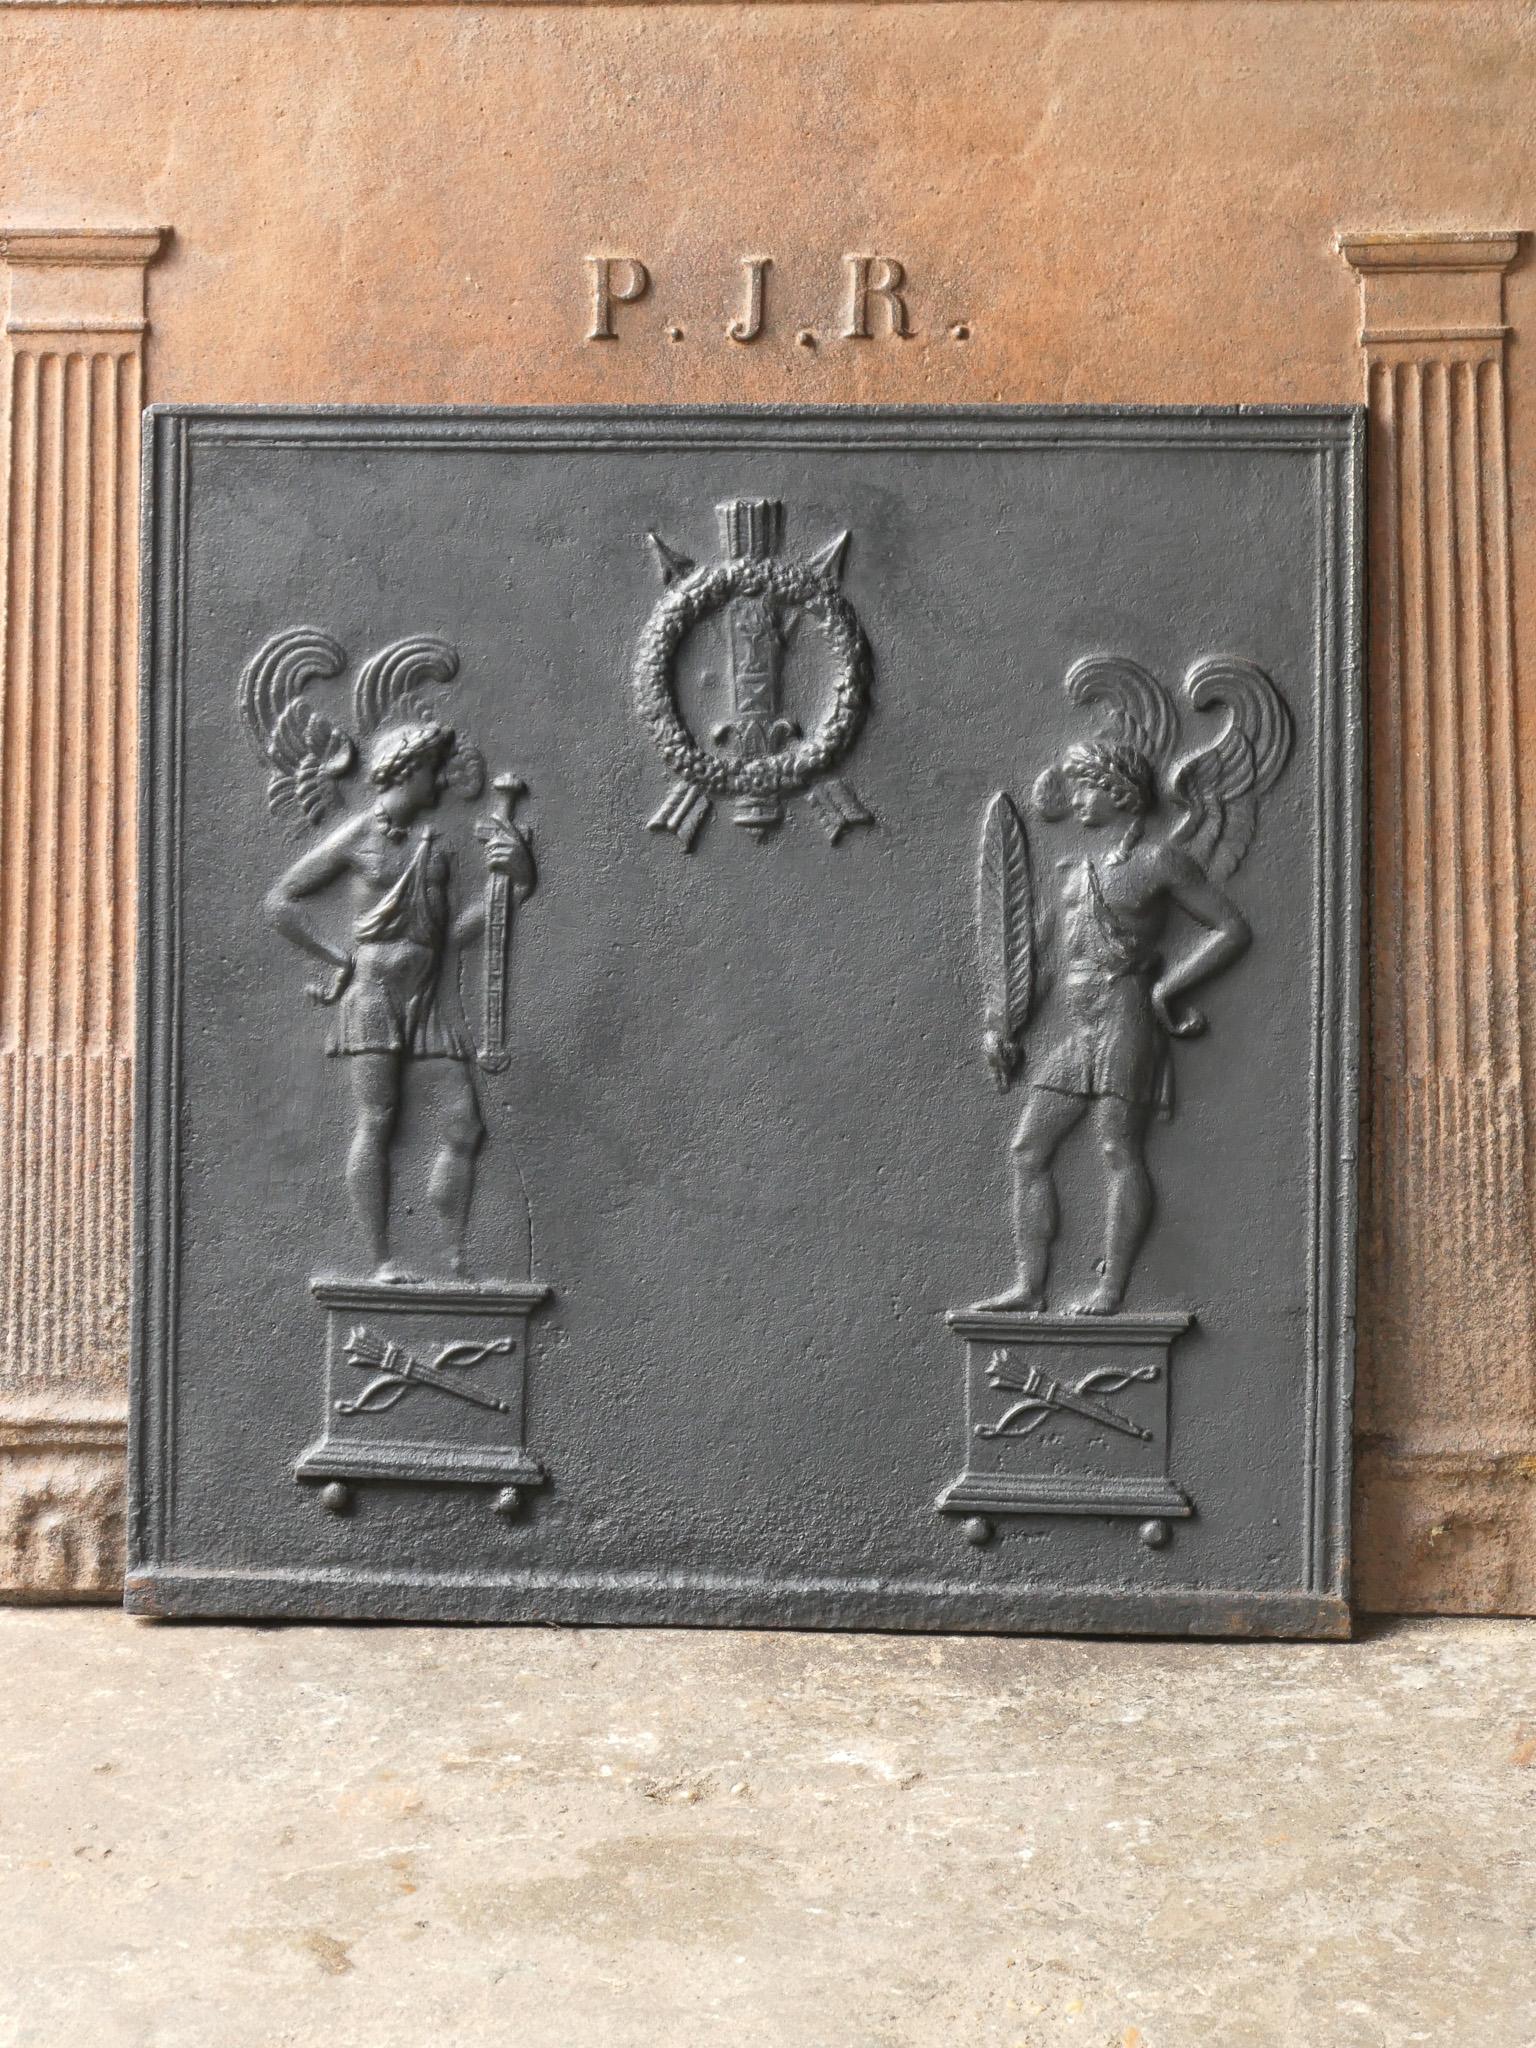 Plaque de cheminée d'époque néoclassique française du 18e - 19e siècle.

La plaque de cheminée est en fonte et a une patine noire/étain. L'état est bon, pas de fissures.







